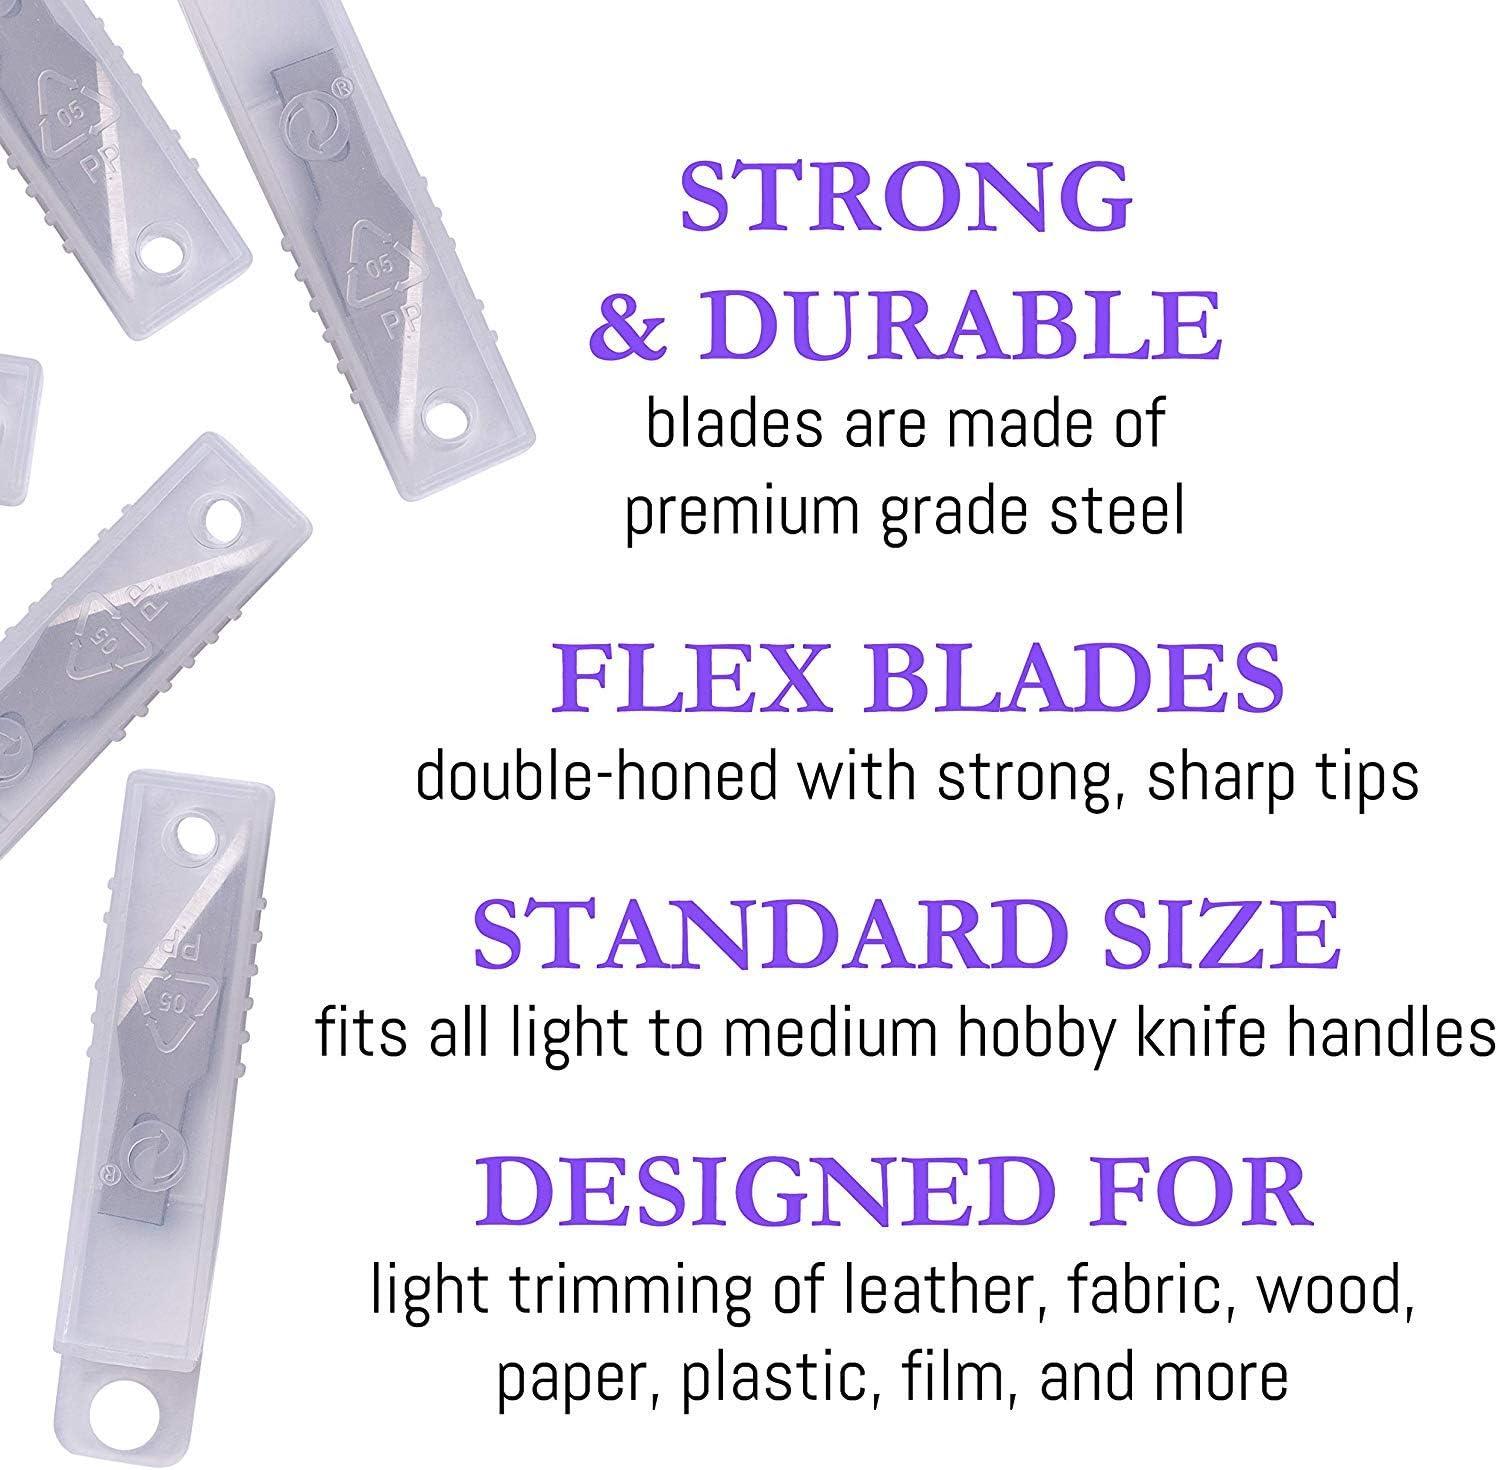 WA Portman 7 Piece Precision Hobby Knife Set - 6 Carbon Steel Art Knife  Blades - Precision Knife Set - 7 Piece Craft Knife Kit - Hobby Knives -  Exacto